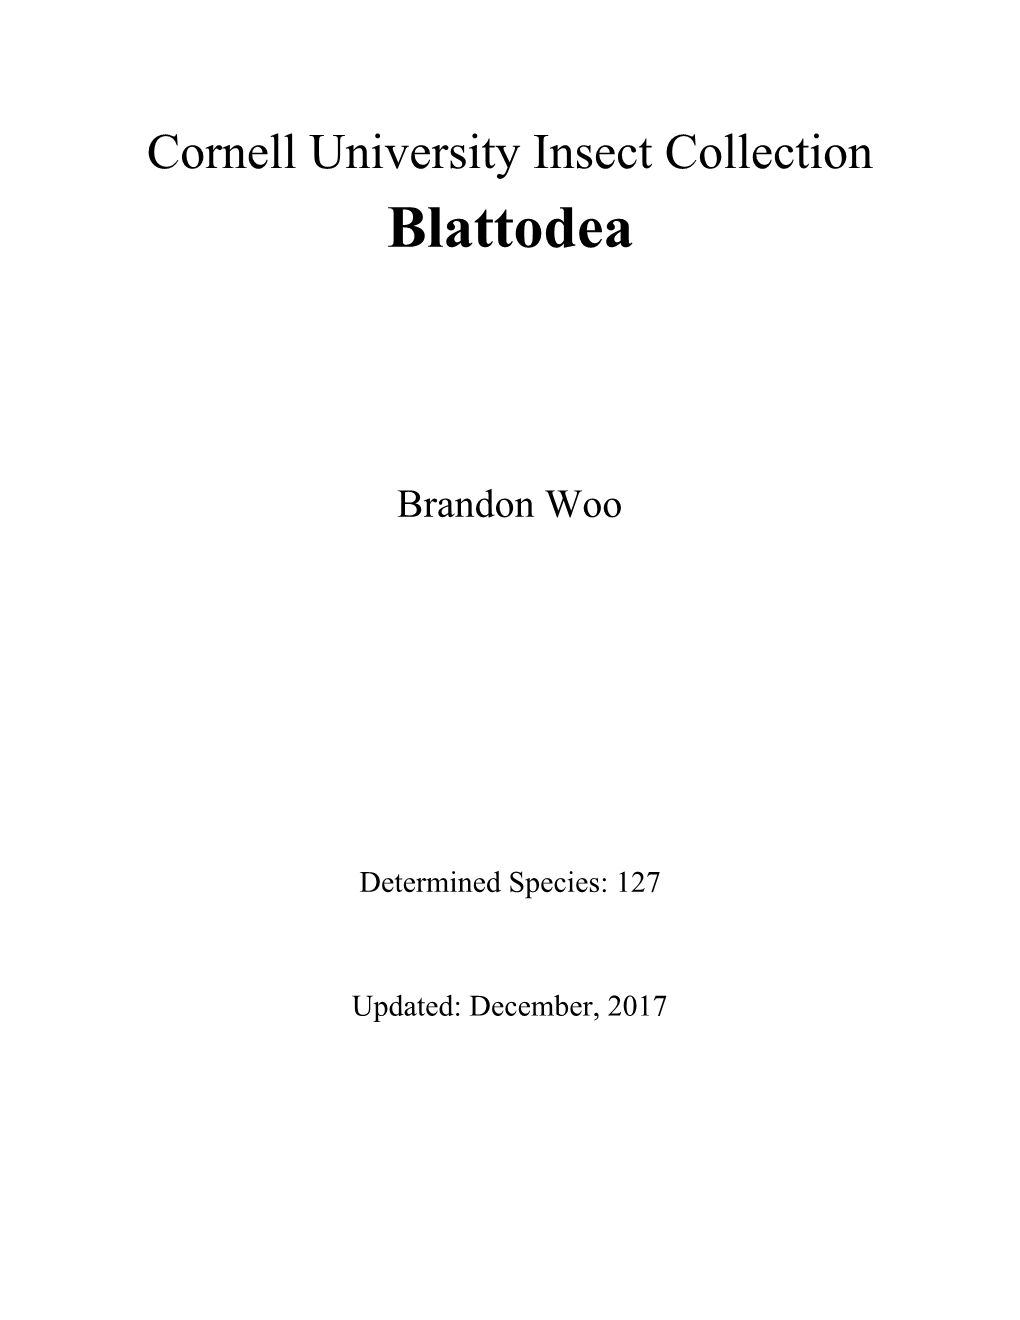 CUIC Blattodea List